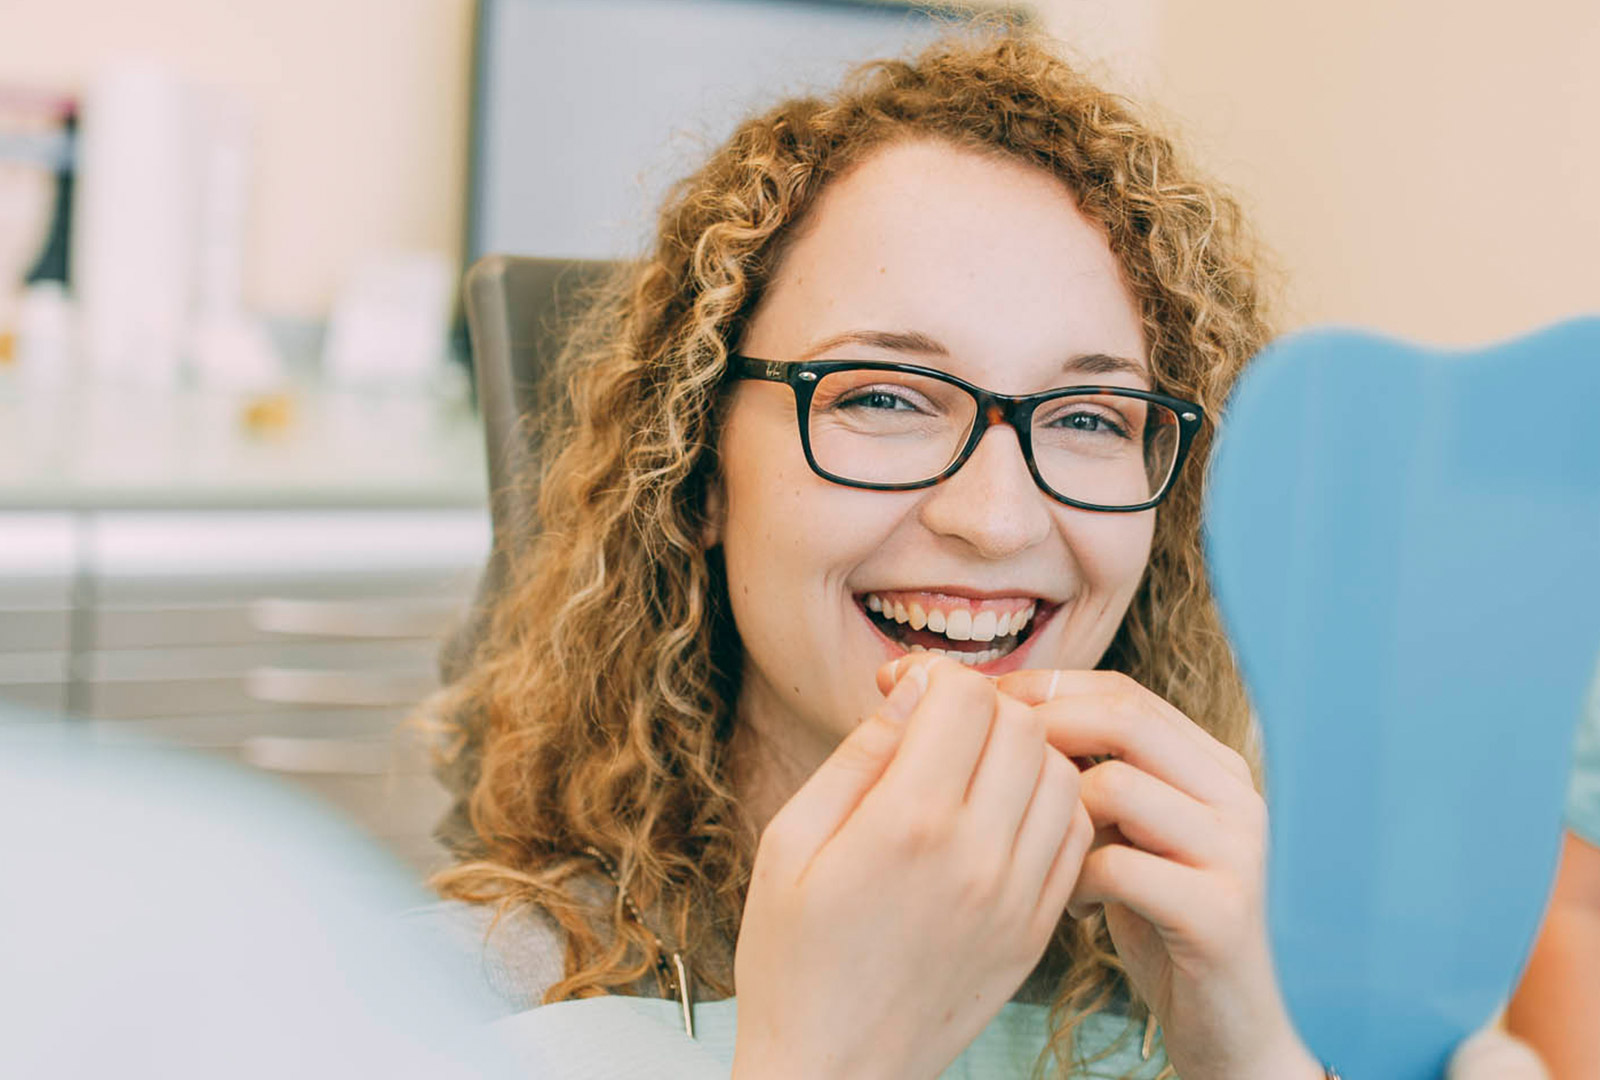 Patientin freut sich über gesunde Zähne dank Zahnprophylaxe Leverkusen